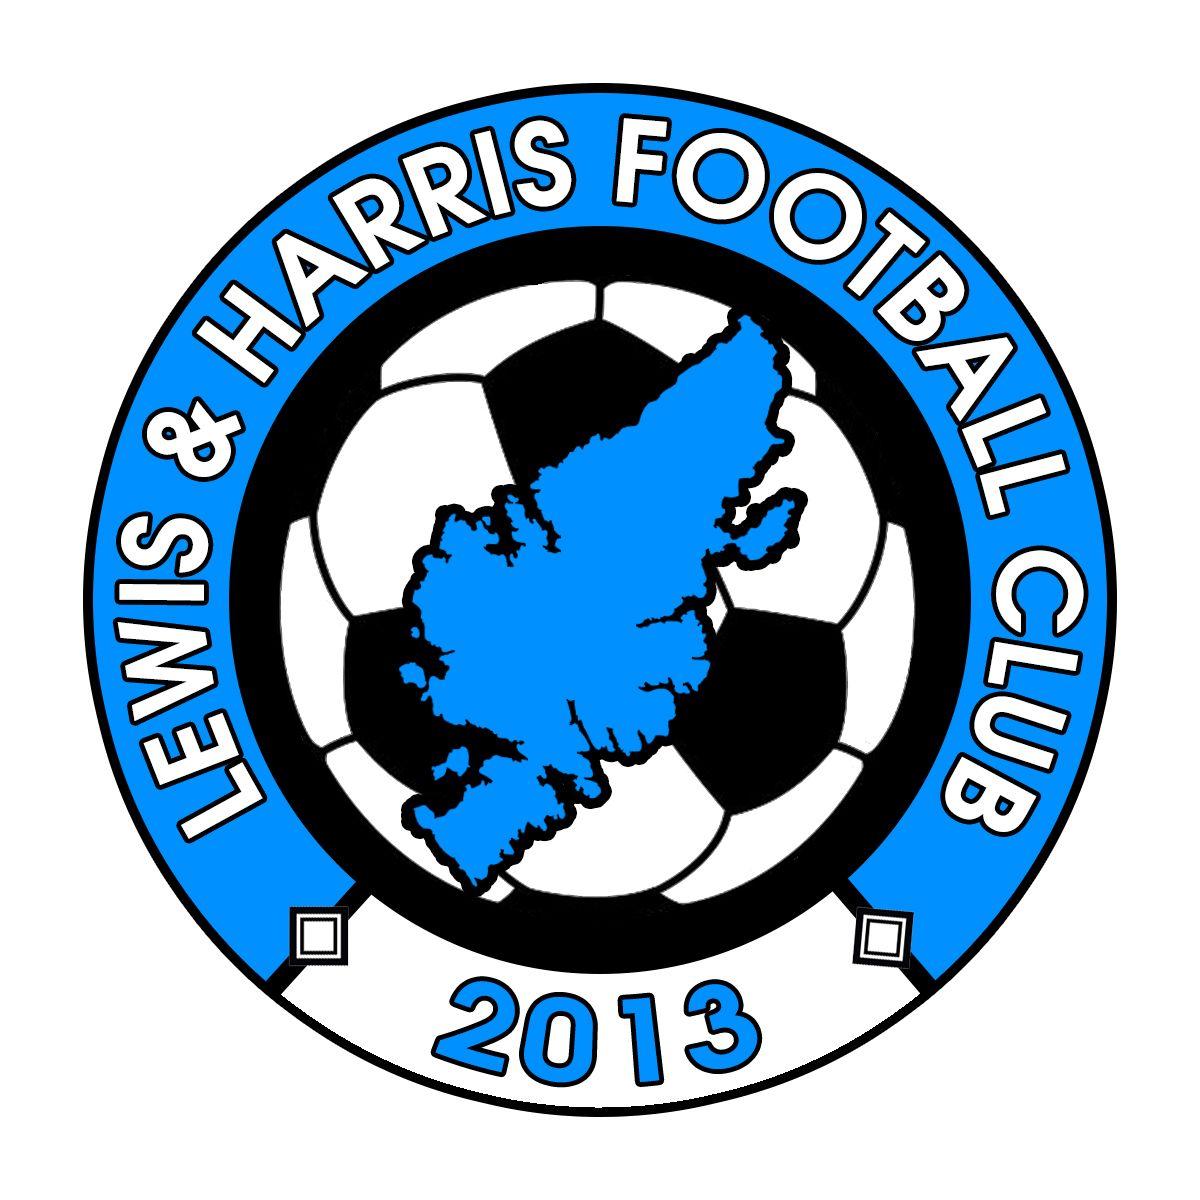 Harris Logo - Lewis-&-Harris-logo - Lewis & Harris FA